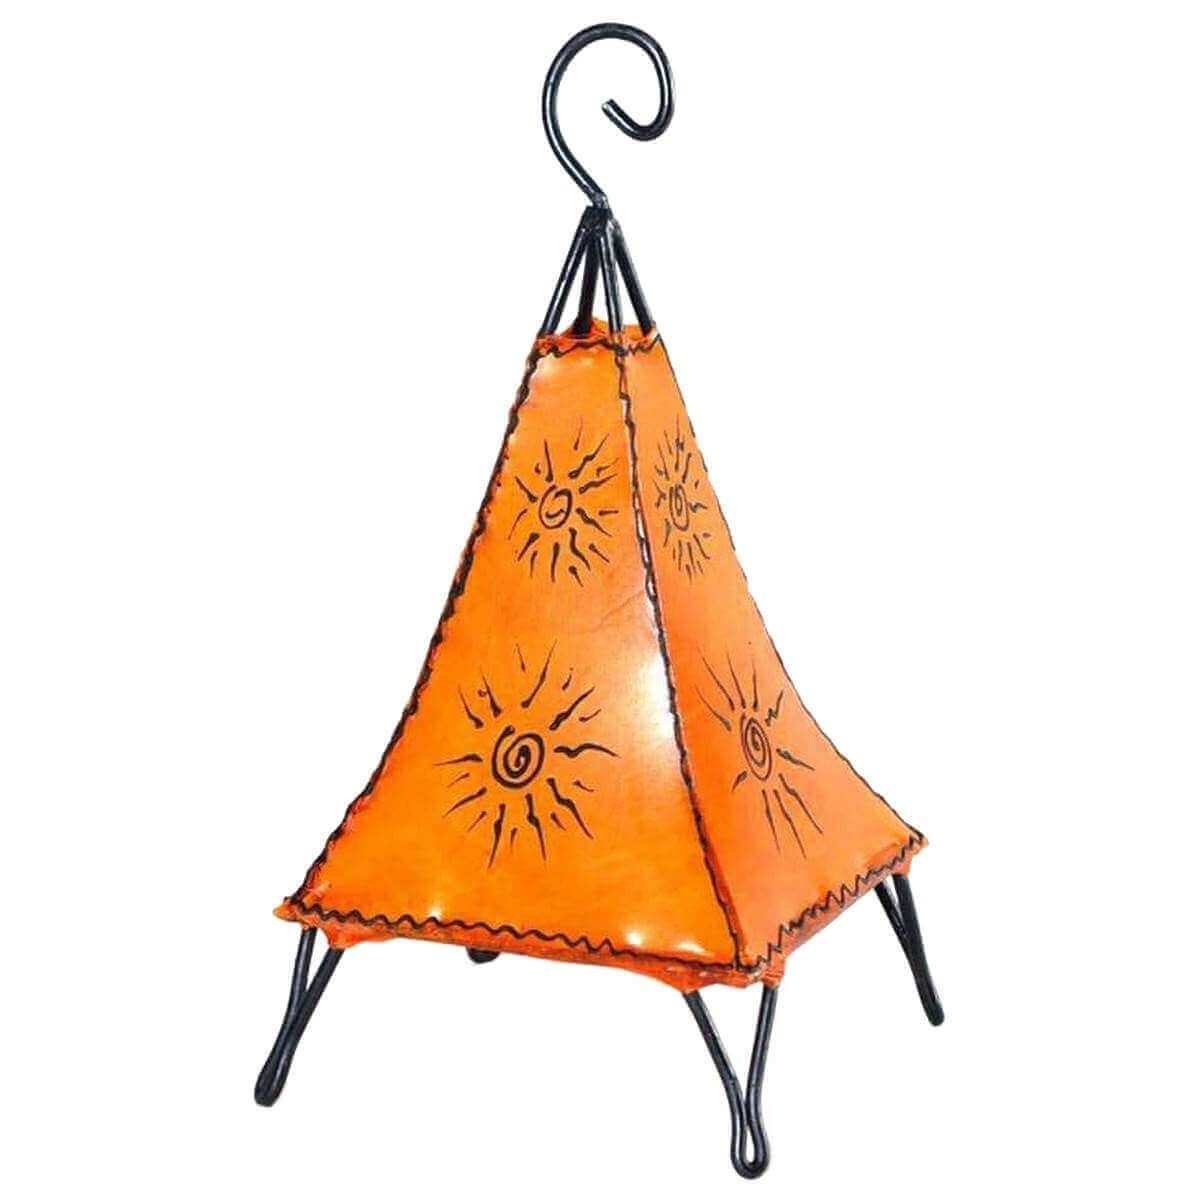 SIMANDRA Stehlampe Pyramide Sonne 35-38cm, Ambilight, ohne Leuchtmittel, Warmweiß, marokkanische Lederlampe Orange